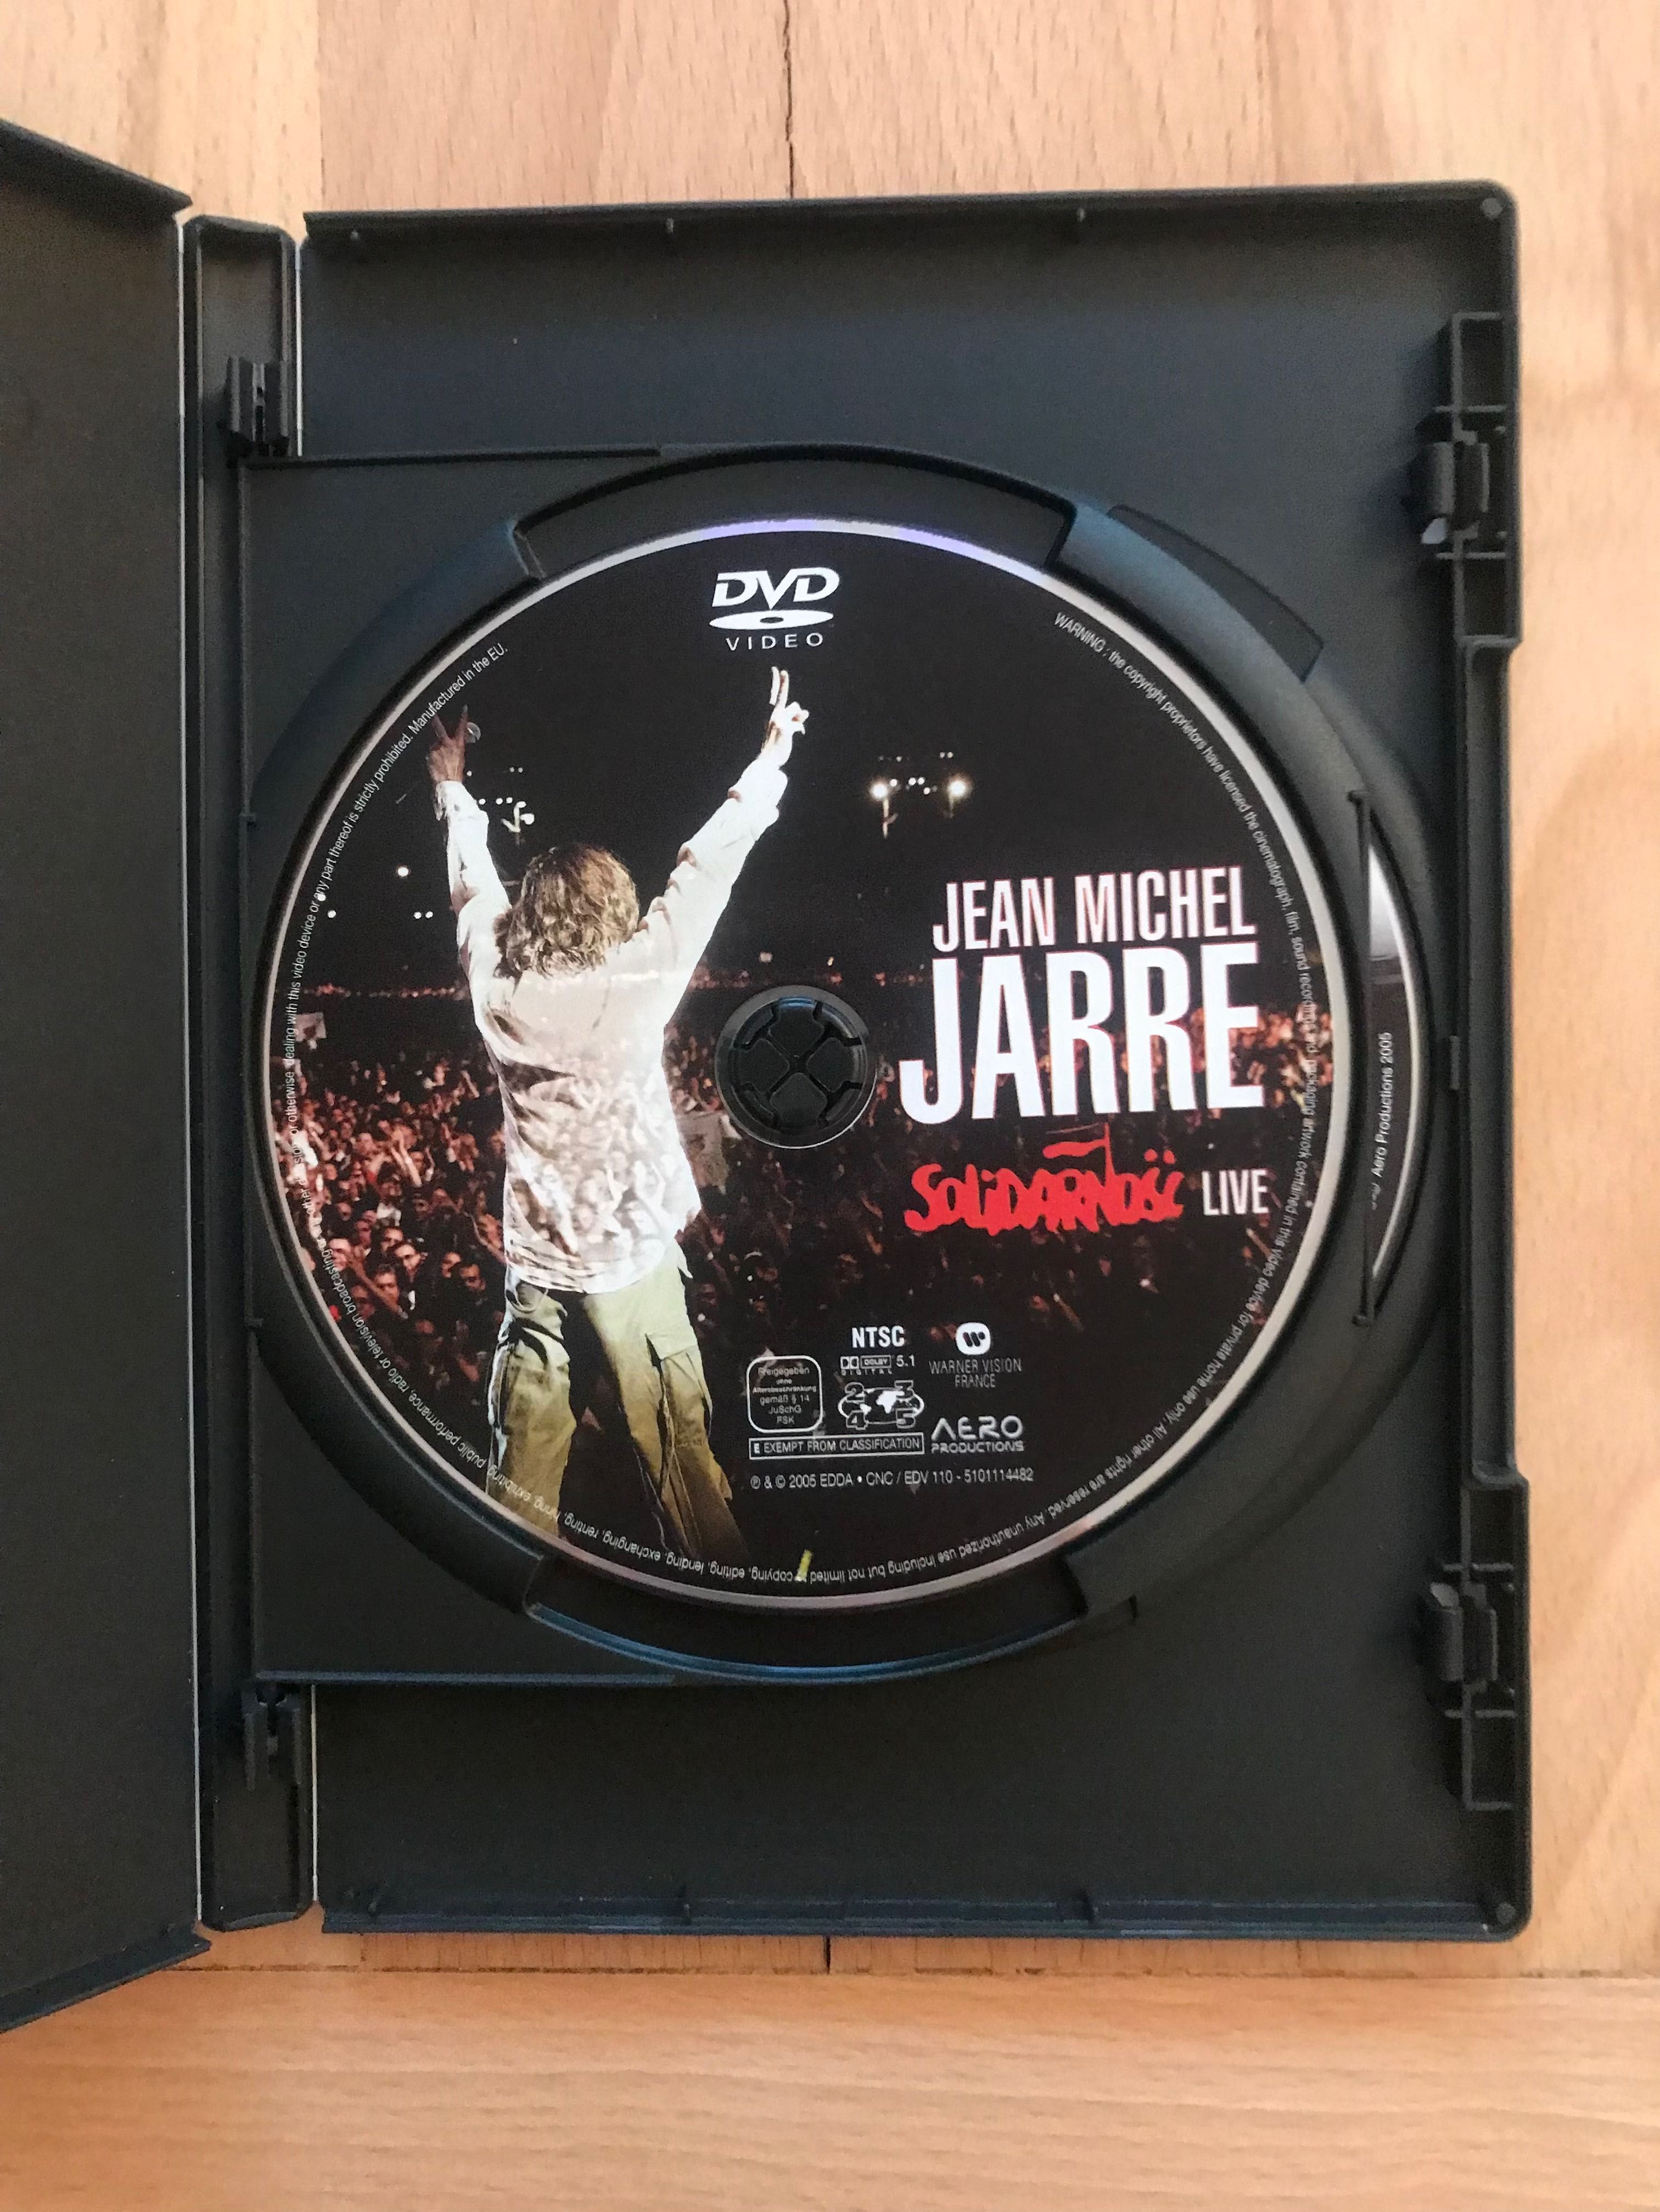 Używana oryginalna kolekcjonerska płyta Jean Michael Jarre Solidarność